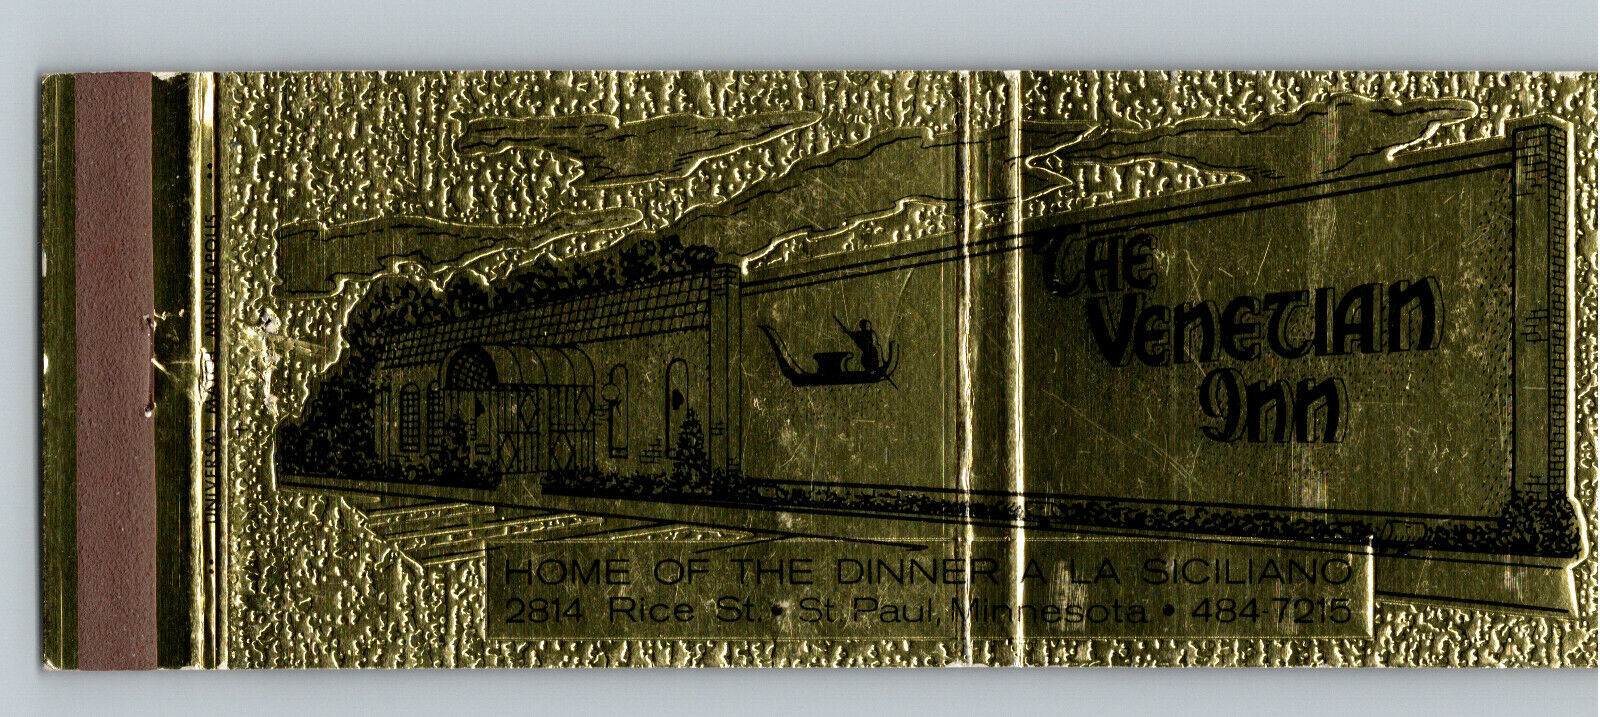 The Venetian Inn St. Paul Minnesota Vintage Matchcover